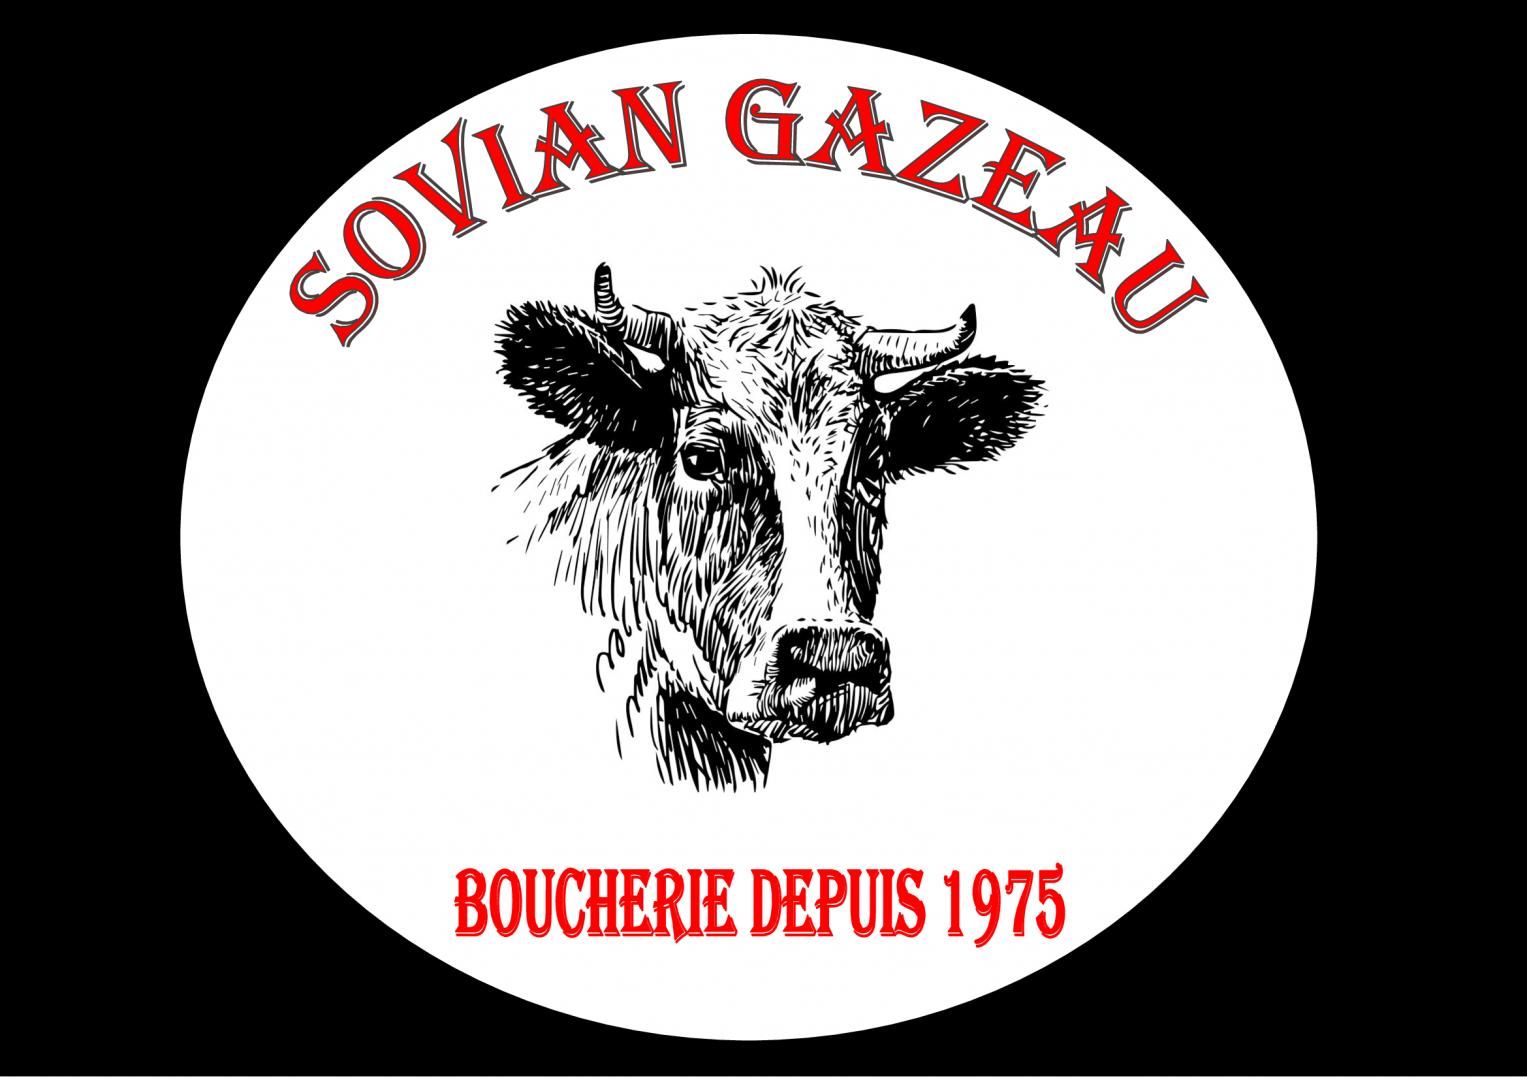 Boucherie Sovian Gazeau 